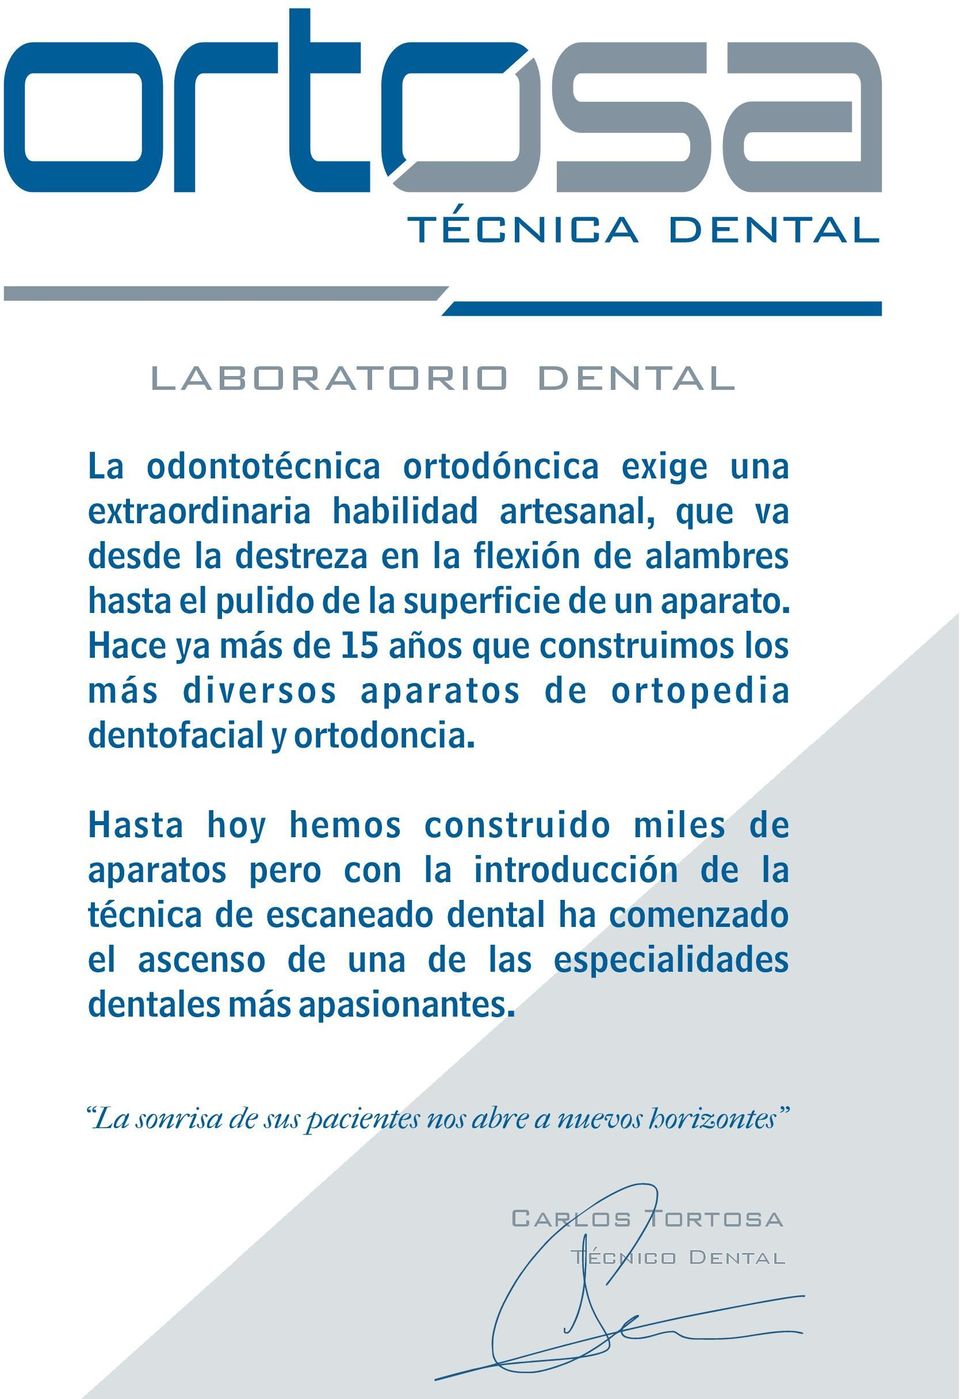 Hace ya más de 15 años que construimos los más diversos aparatos de ortopedia dentofacial y ortodoncia.